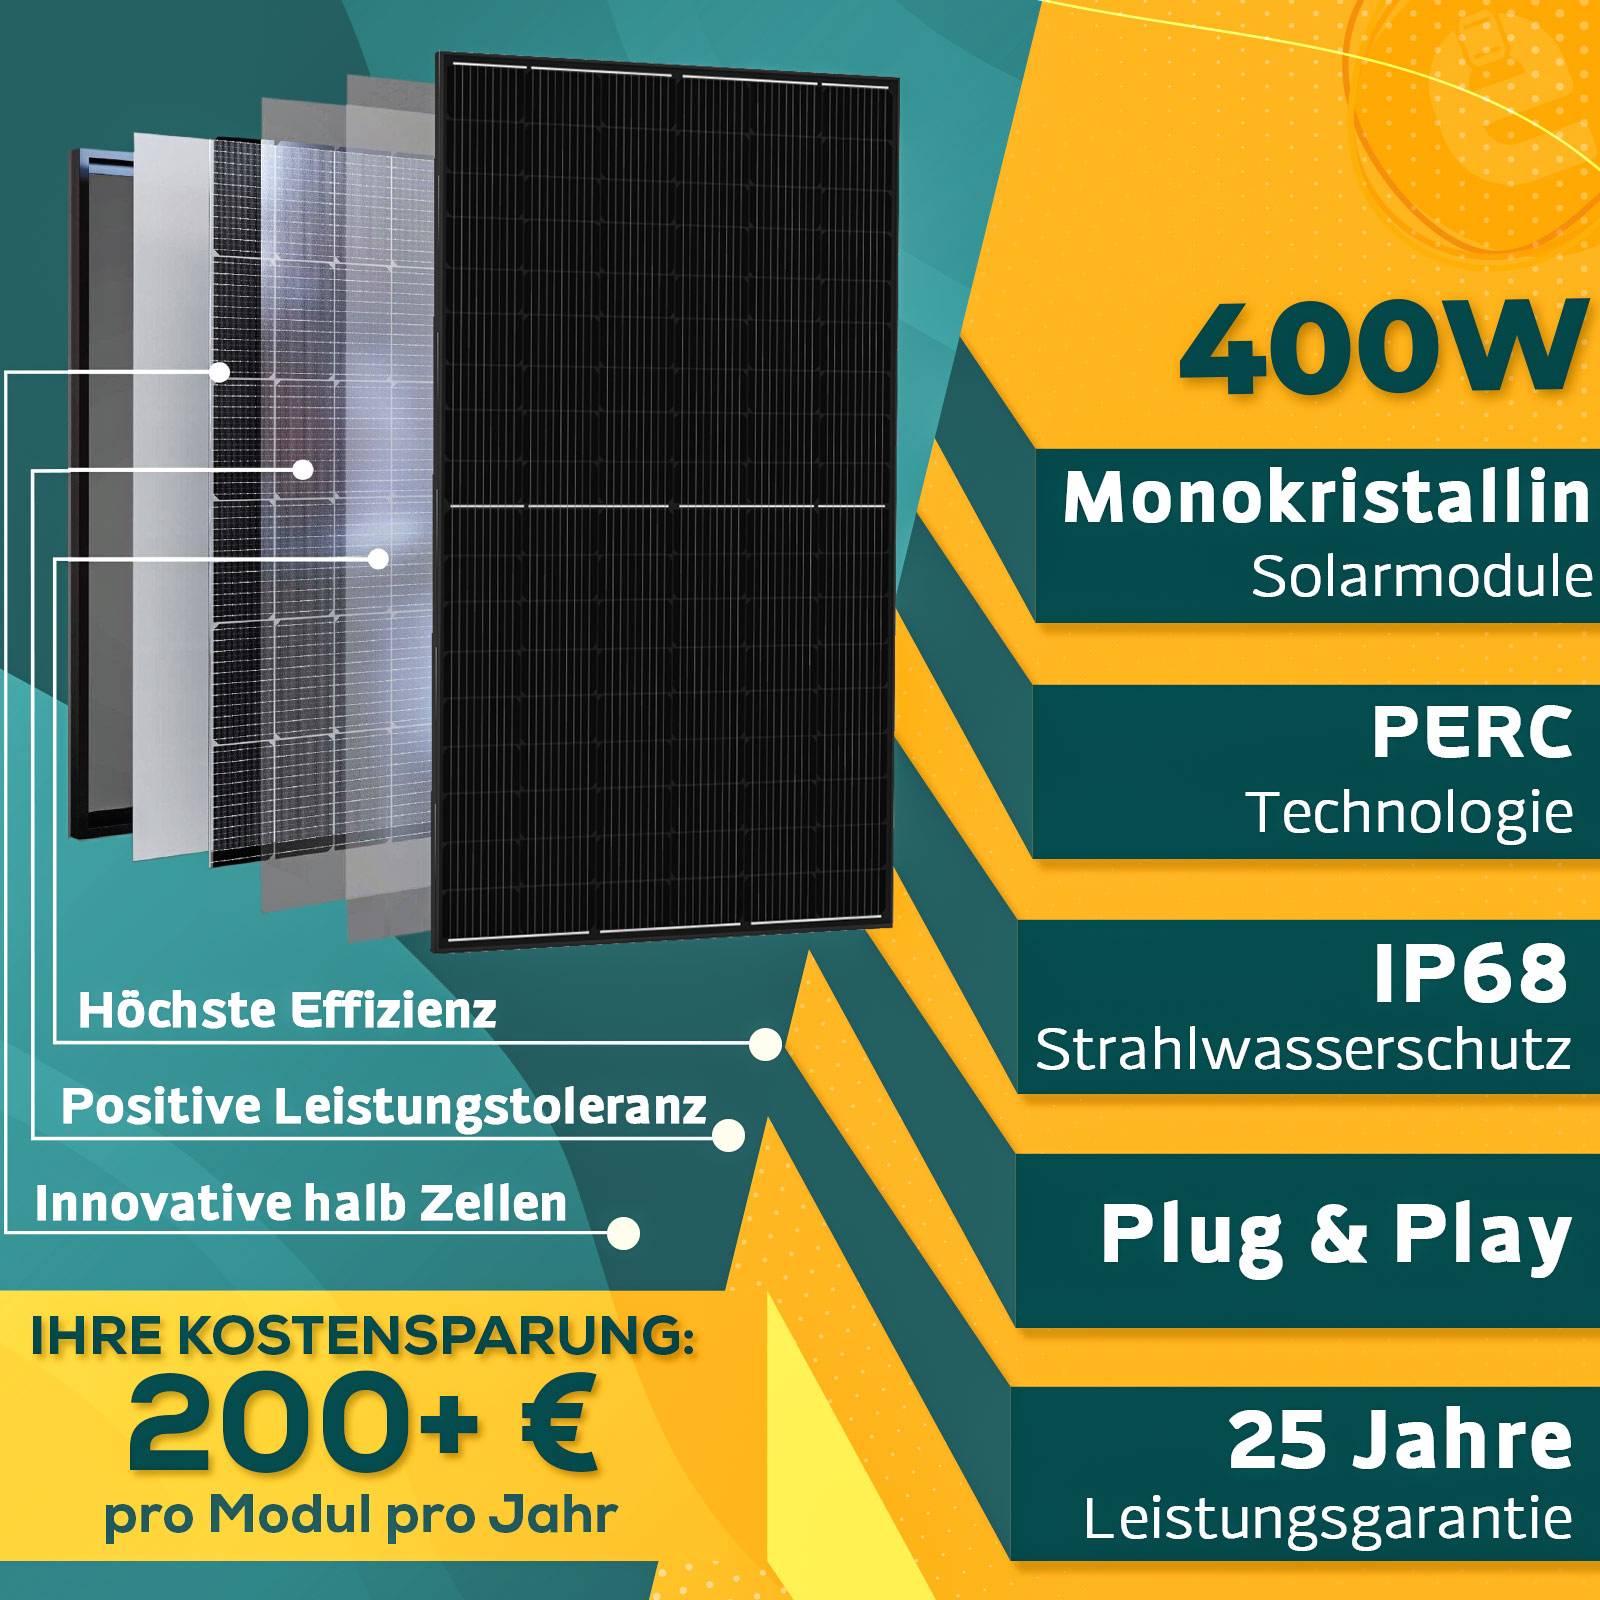 800W Balkonkraftwerk Komplettset inkl. 400W Solarmodule, NEP 600W WIFI  Wechselrichter, 5M Schuko Stecker - Enprove Solar GmbH